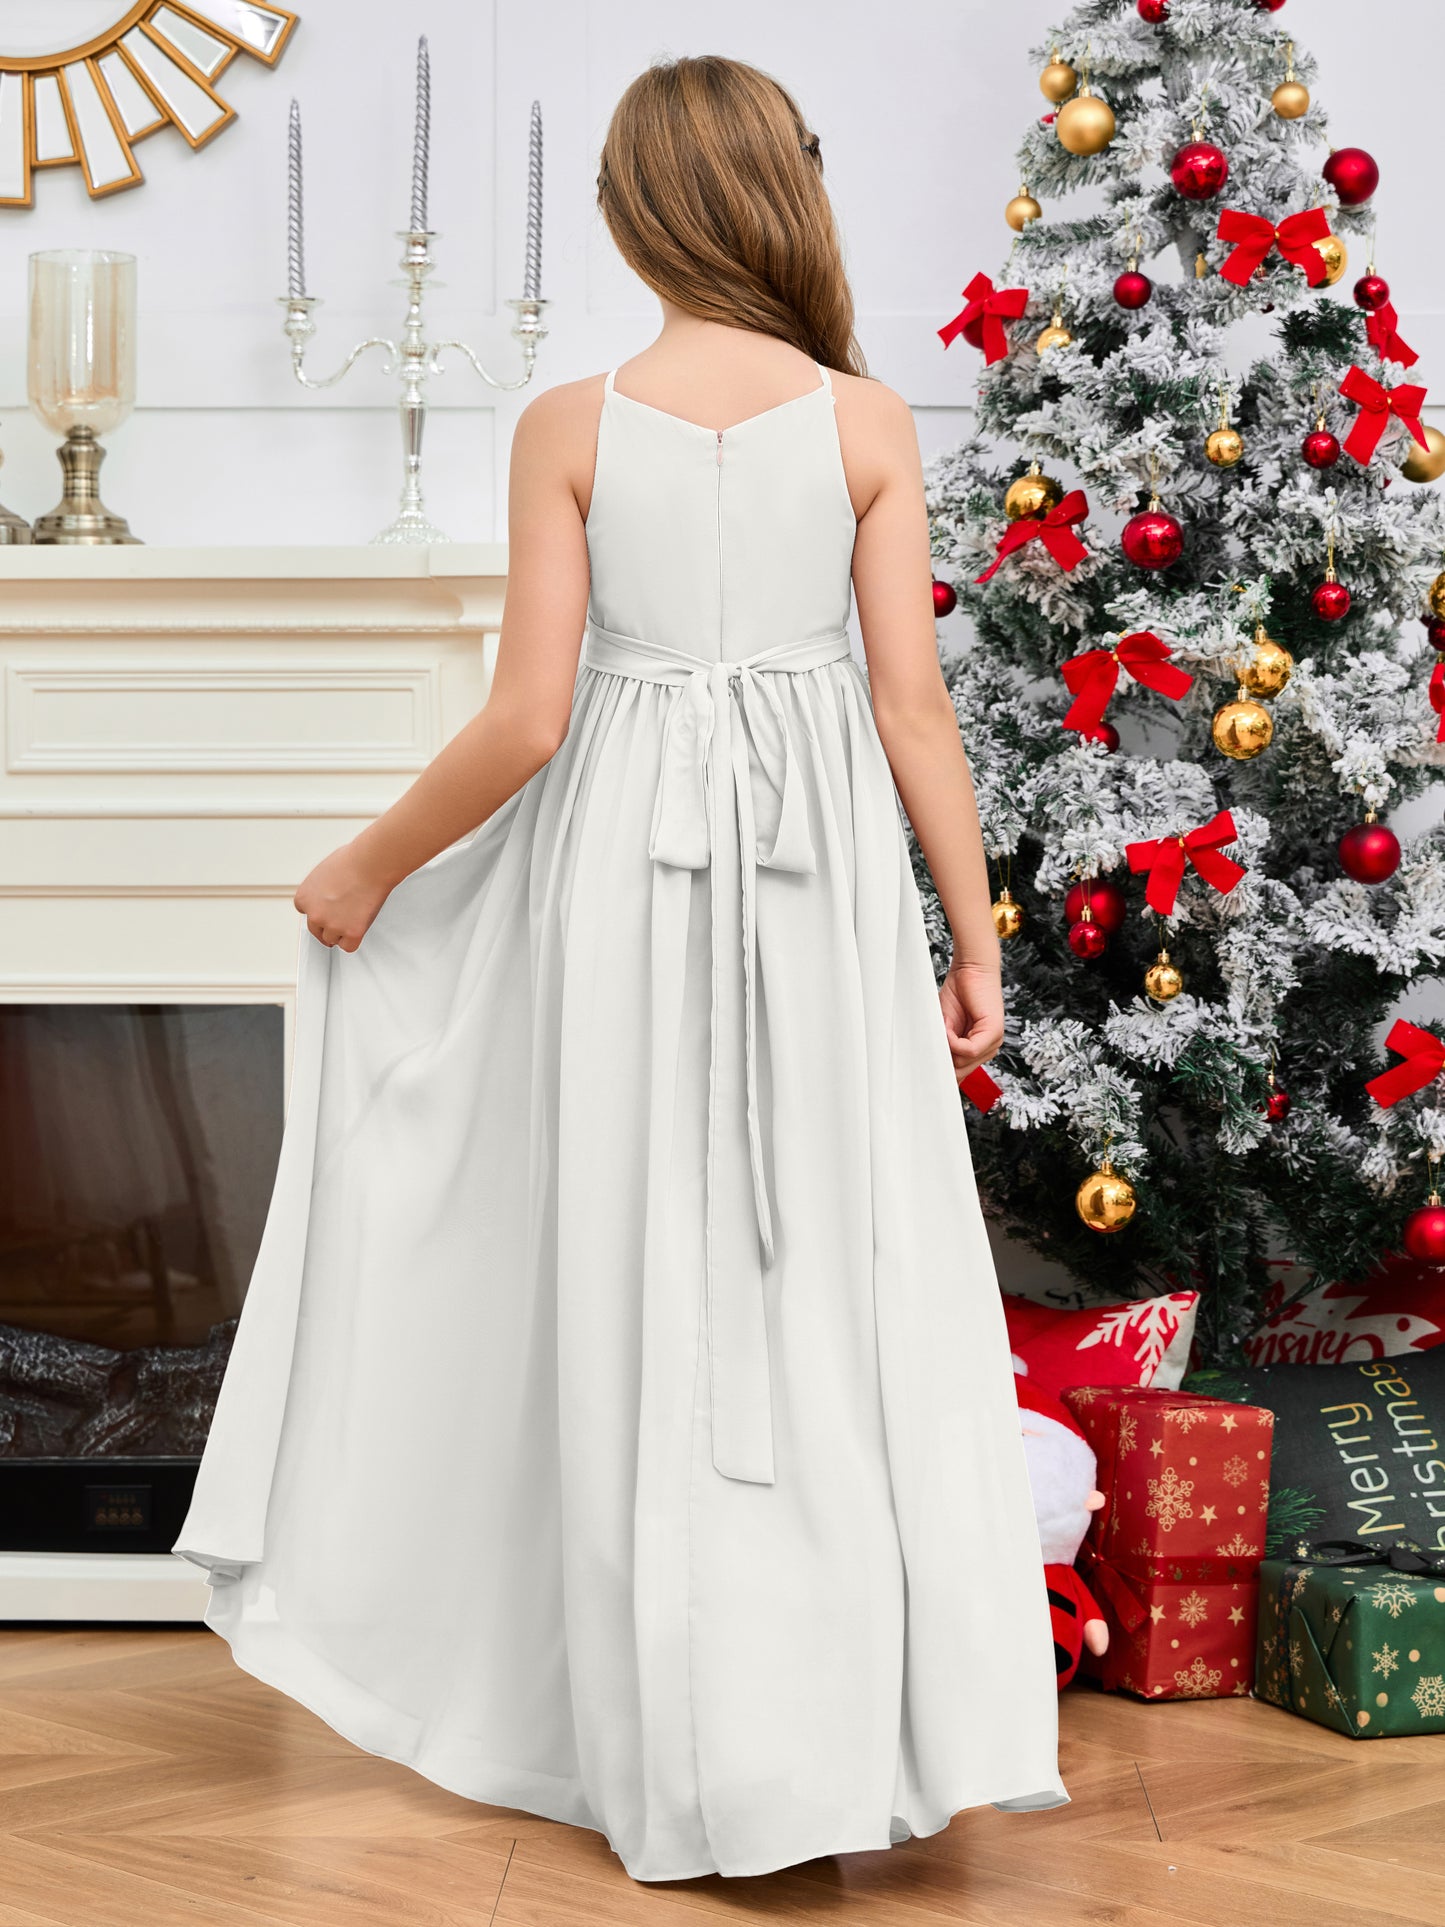 Jewel Zipper Back Long Chiffon Junior Bridesmaid Dress